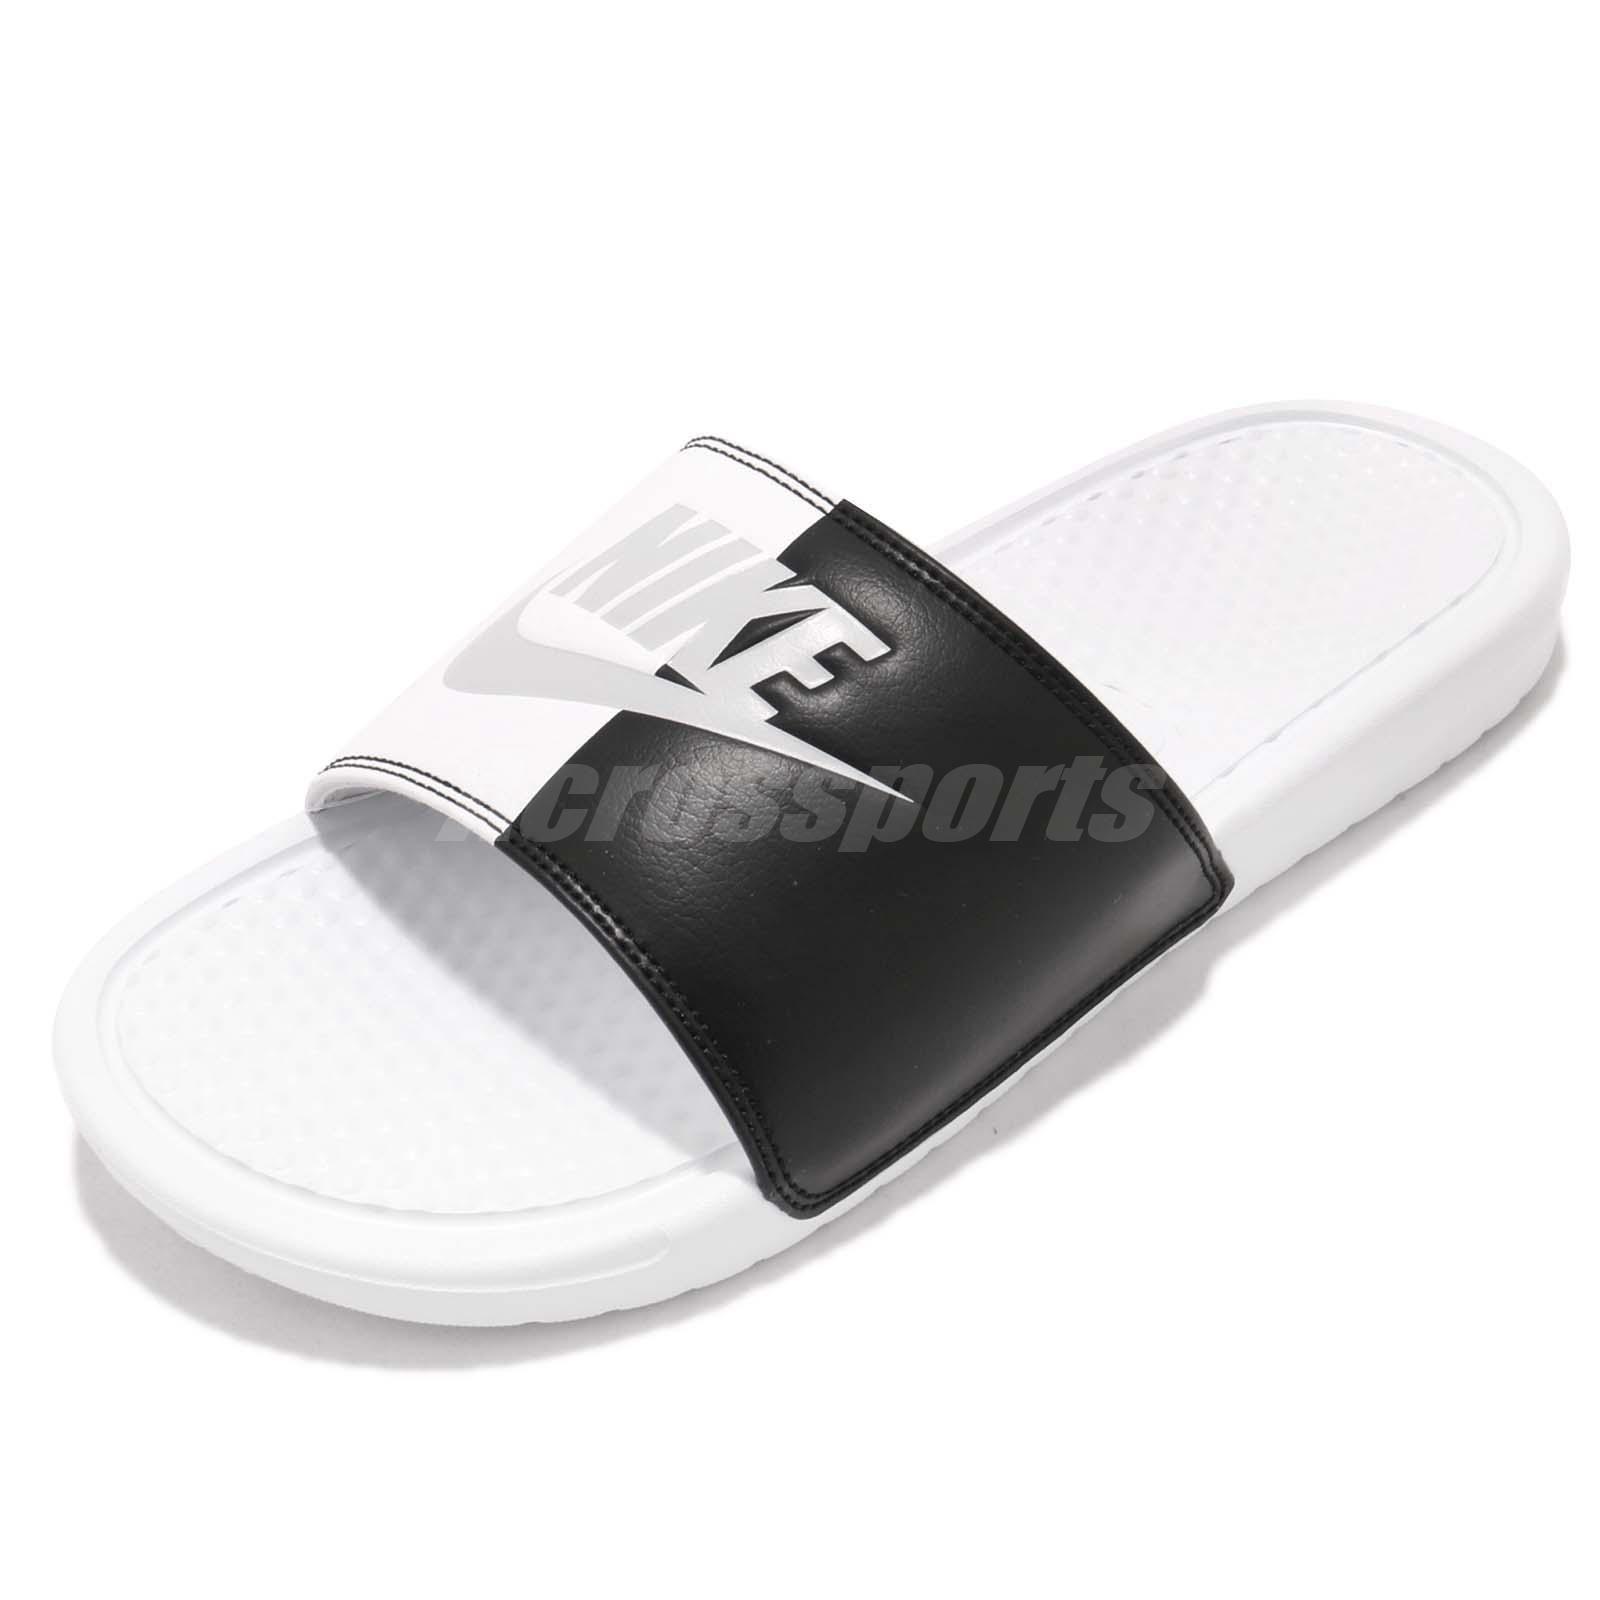 Yin Yang Black and White Box Logo - Nike Wmns Benassi JDI White Black Yin Yang Women Sports Sandal ...